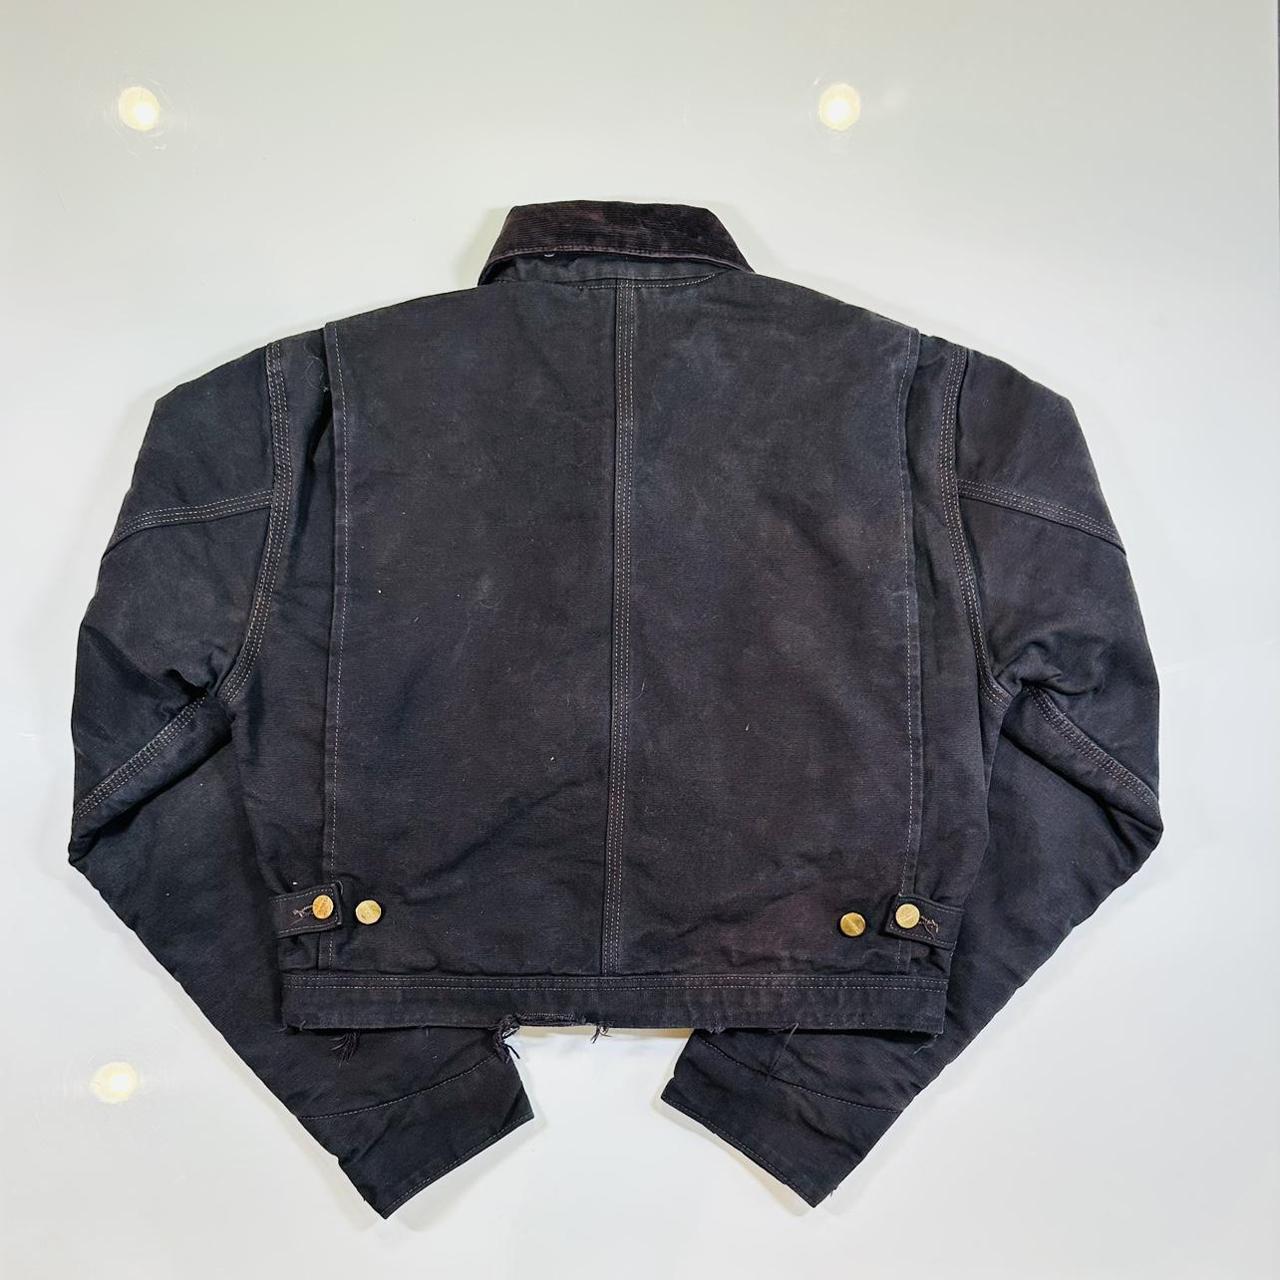 Small carhartt jacket. Custom made from altered... - Depop